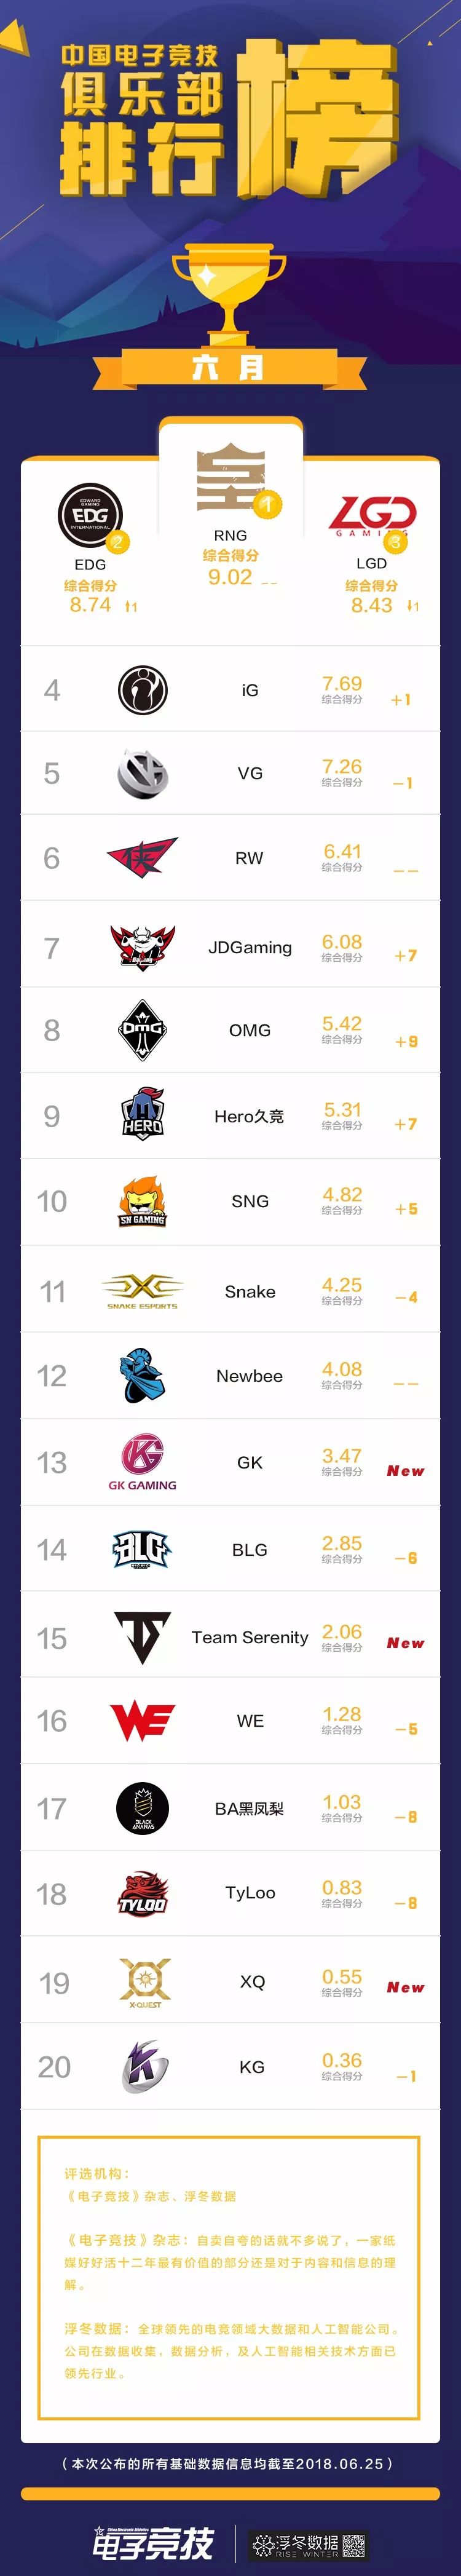 [榜单] 中国电子竞技俱乐部六月排行 ：RNG连续三个月称霸榜单